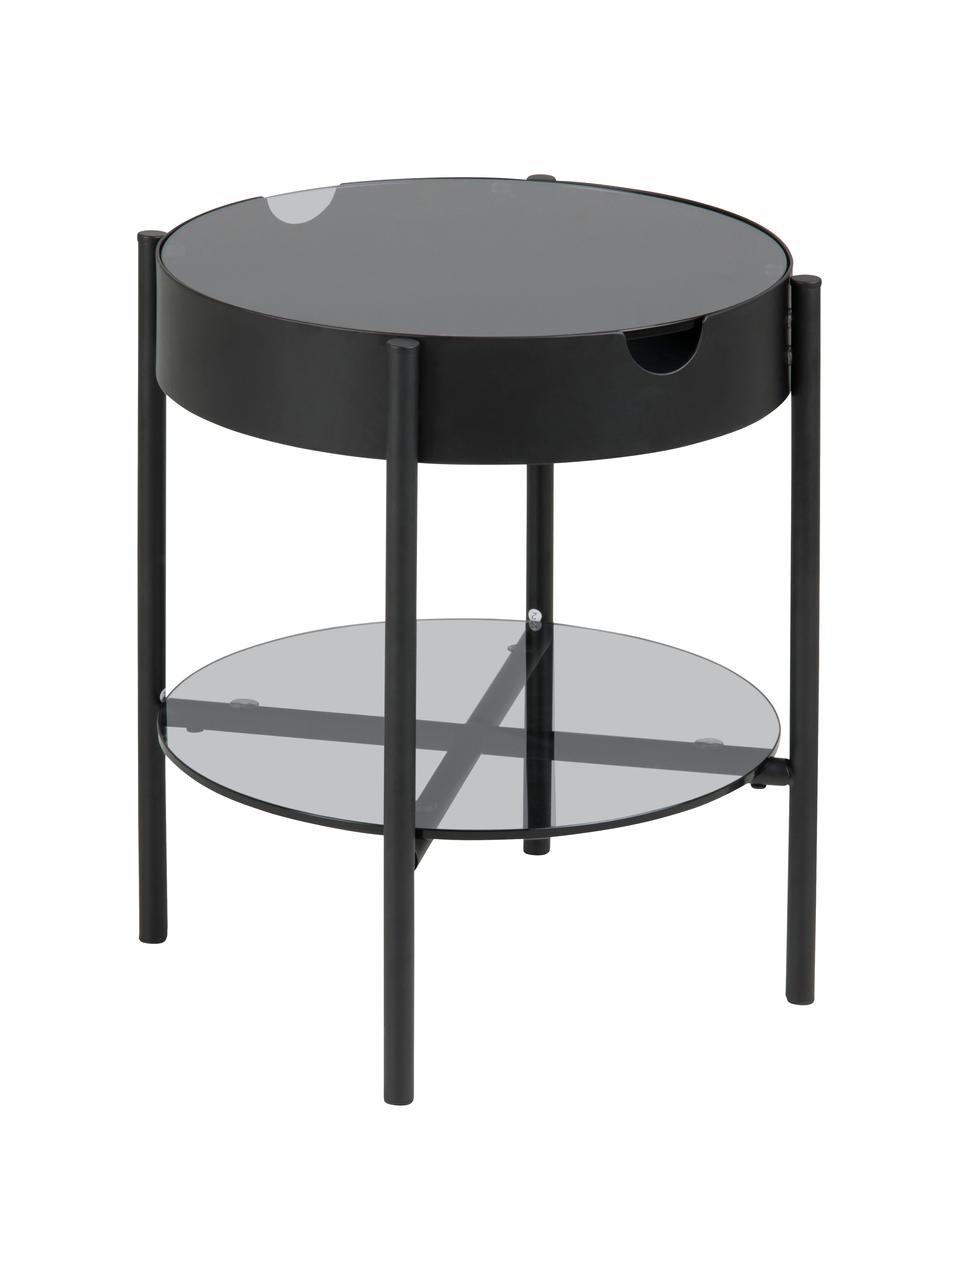 Stolik ze szkła z miejscem do przechowywania Tipton, Szkło hartowane, metal, Czarny, Ø 45 x W 50 cm